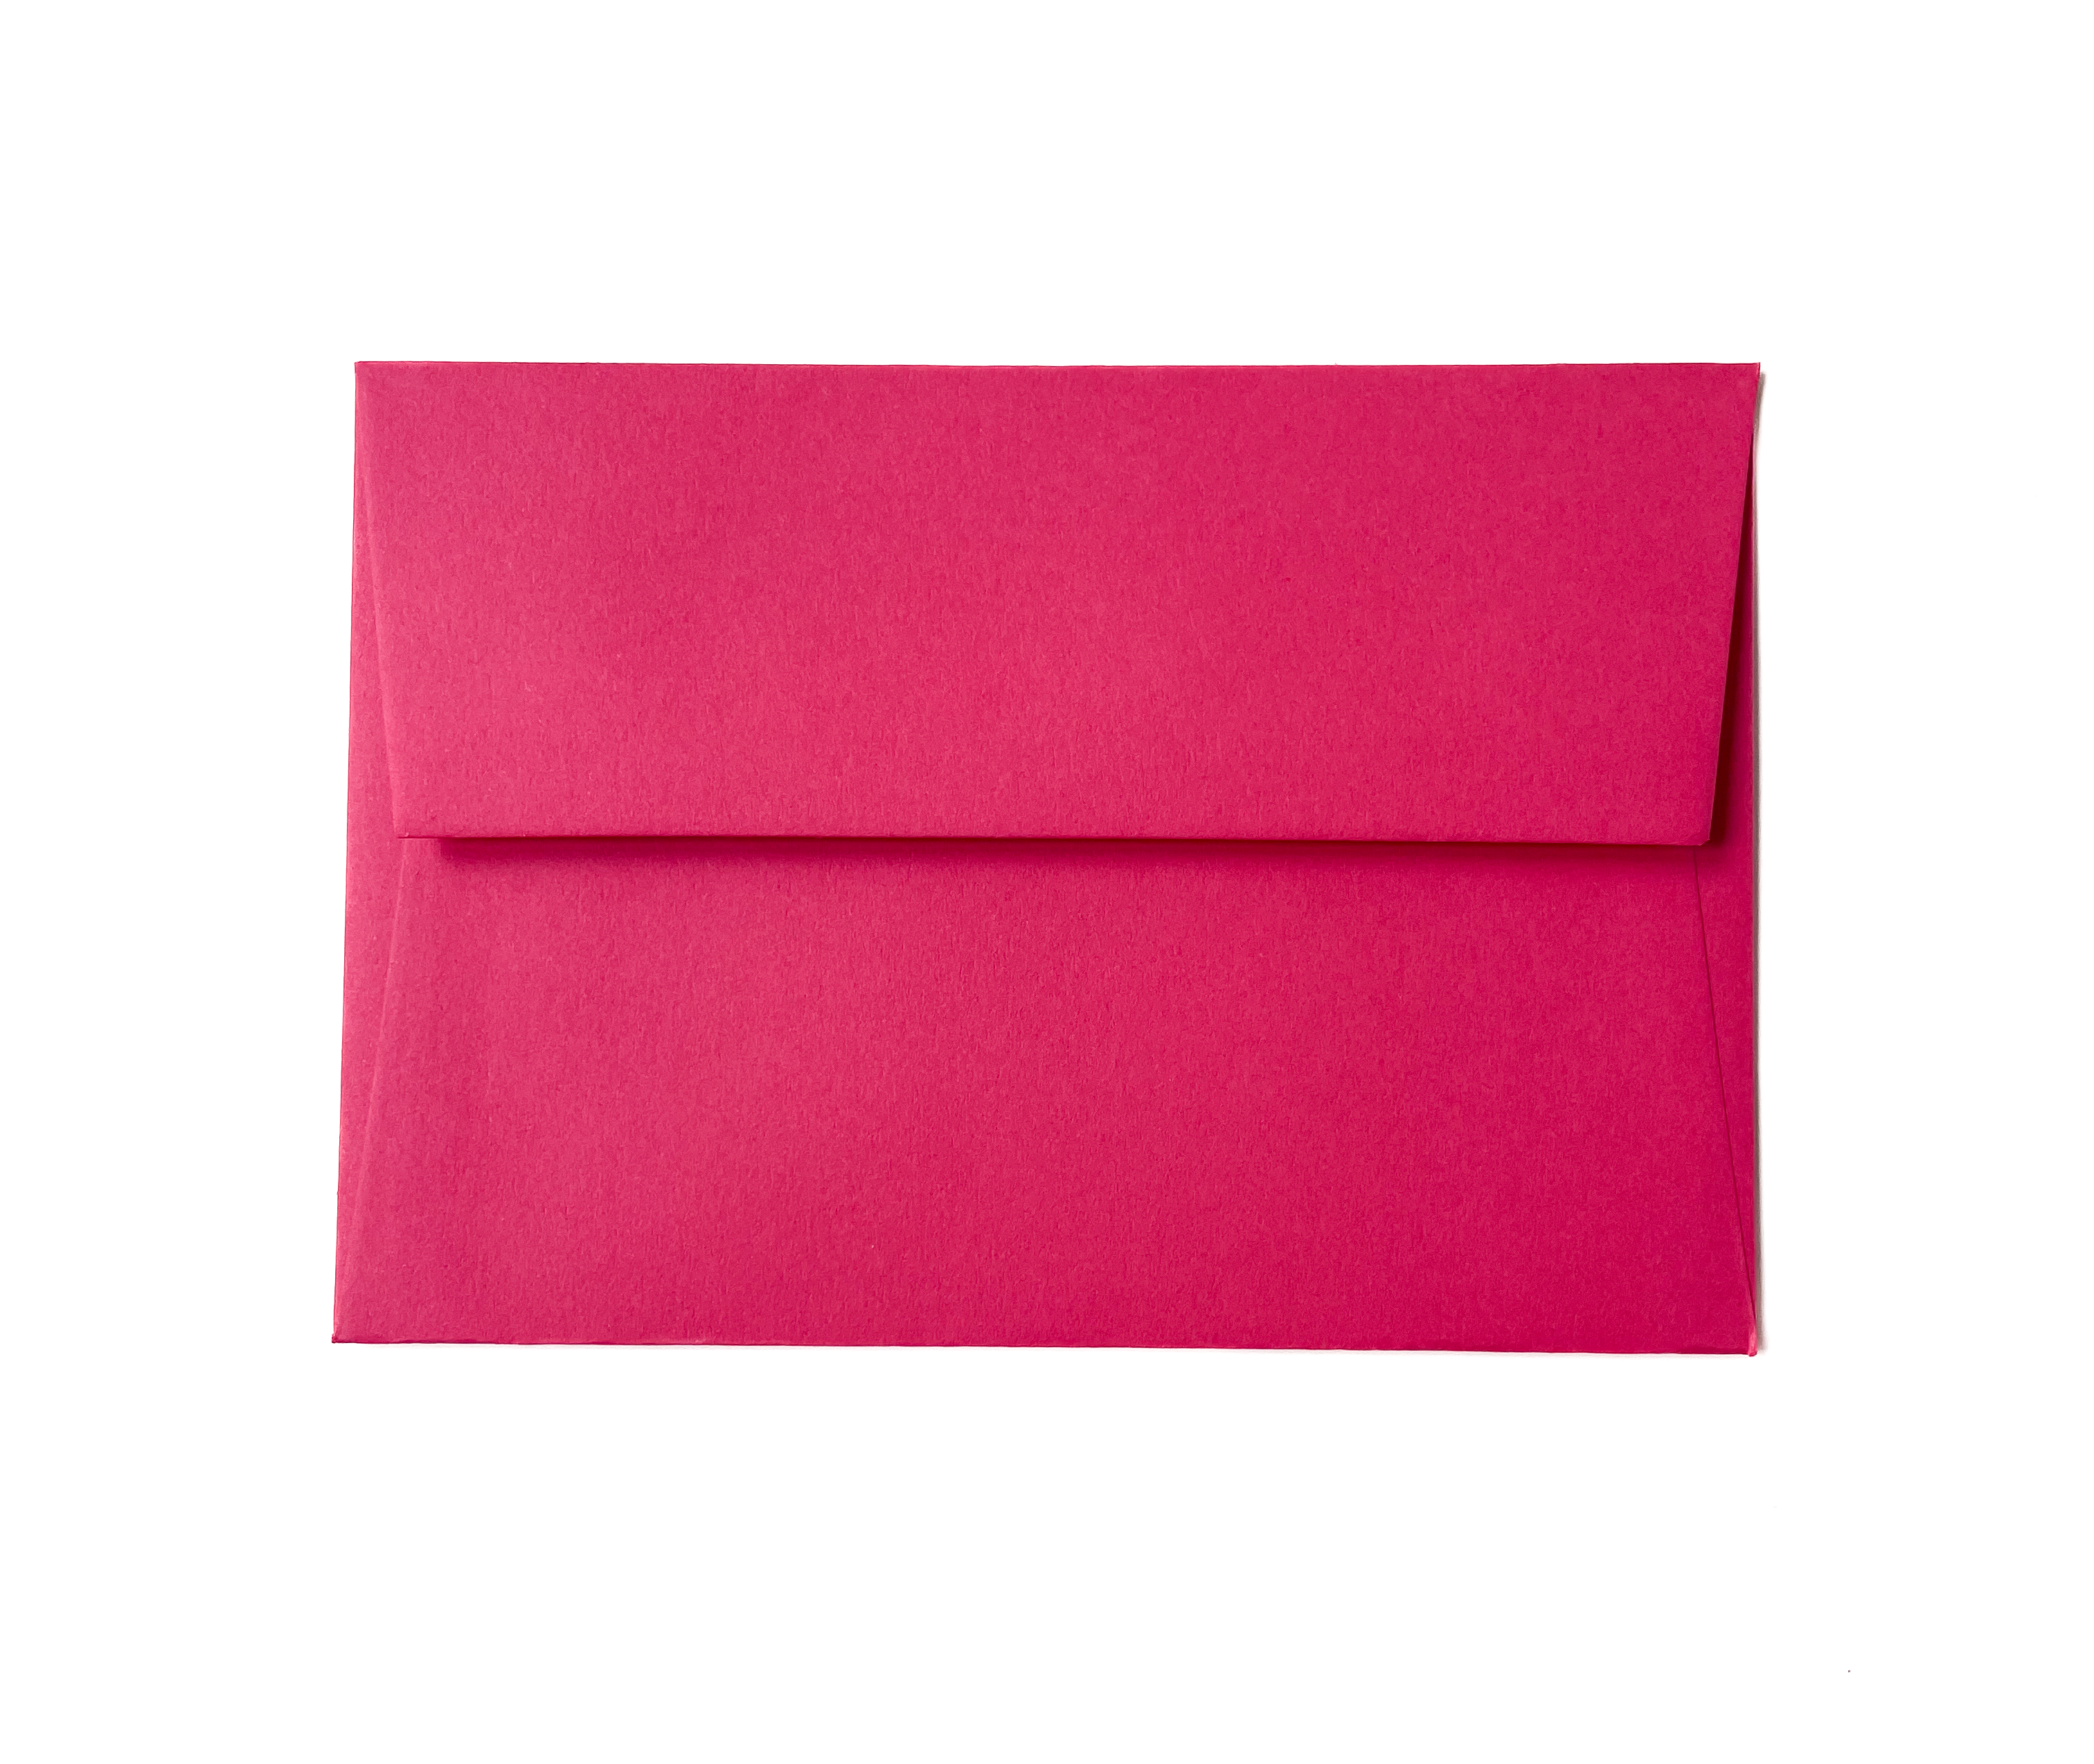 Enveloppe C6 - Hot pink